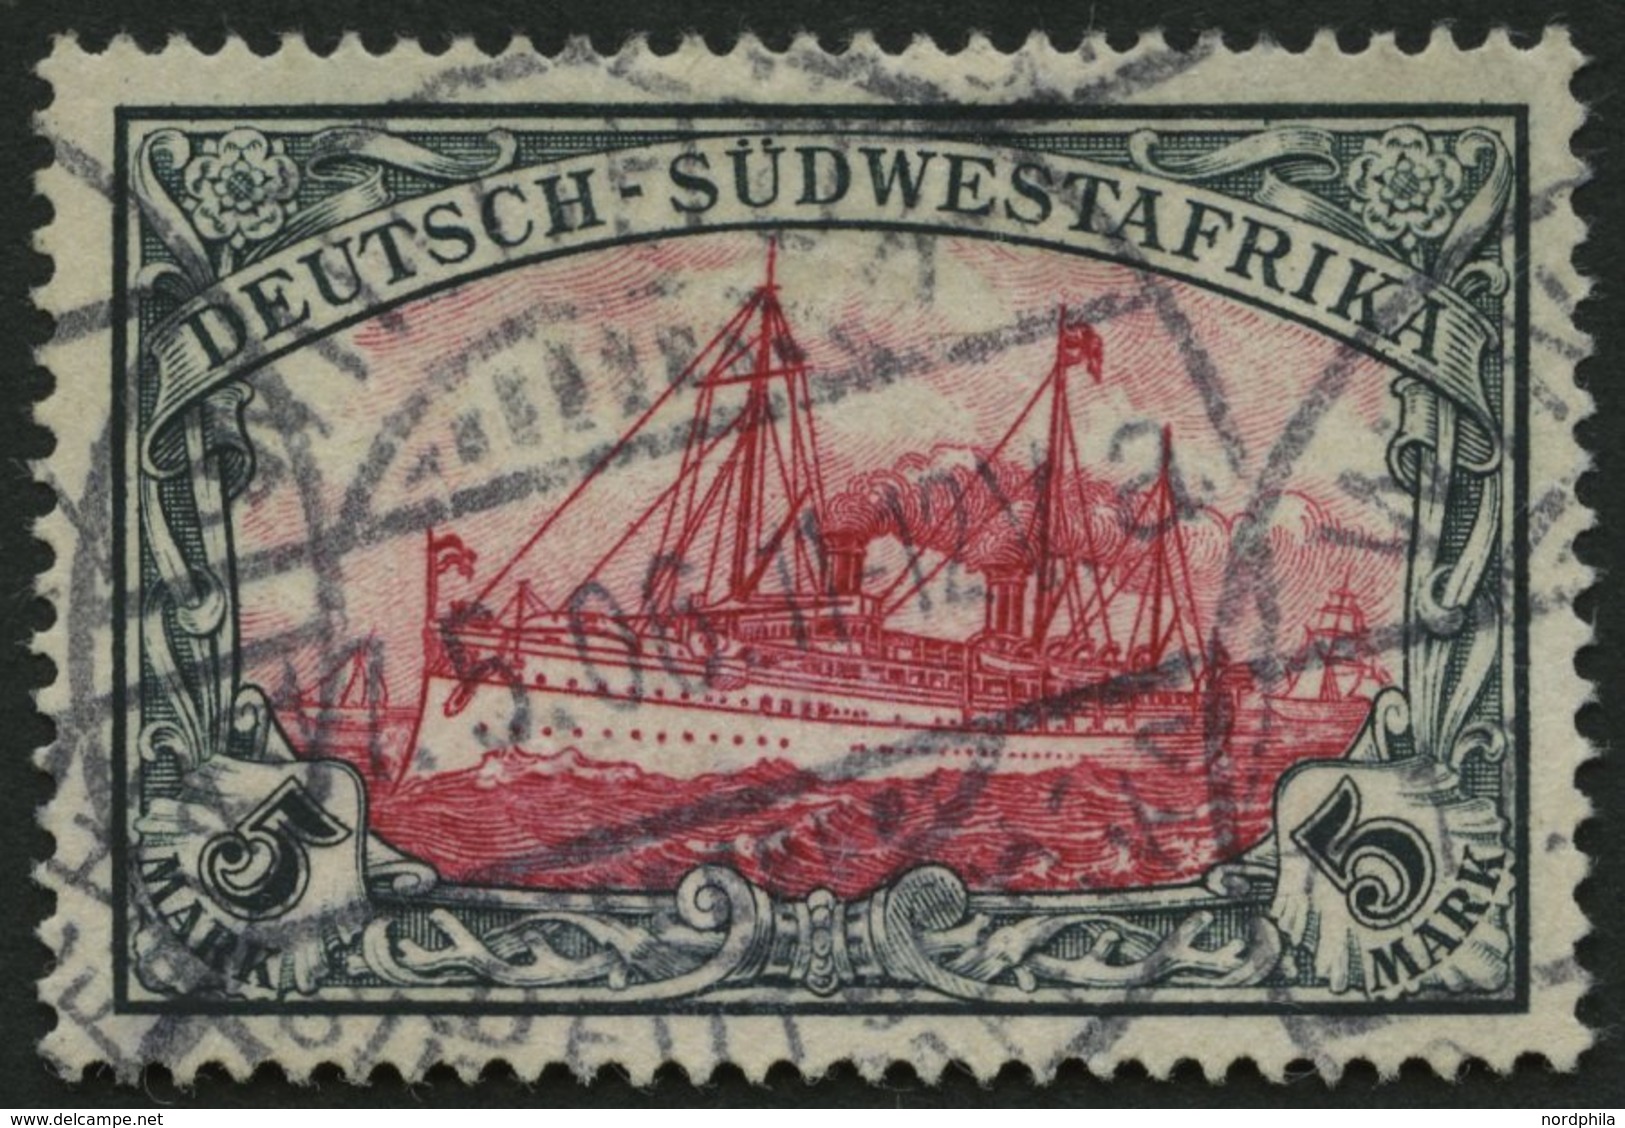 DSWA 23 O, 1901, 5 M. Grünschwarz/bräunlichkarmin, Ohne Wz., Pracht, Mi. 200.- - Deutsch-Südwestafrika